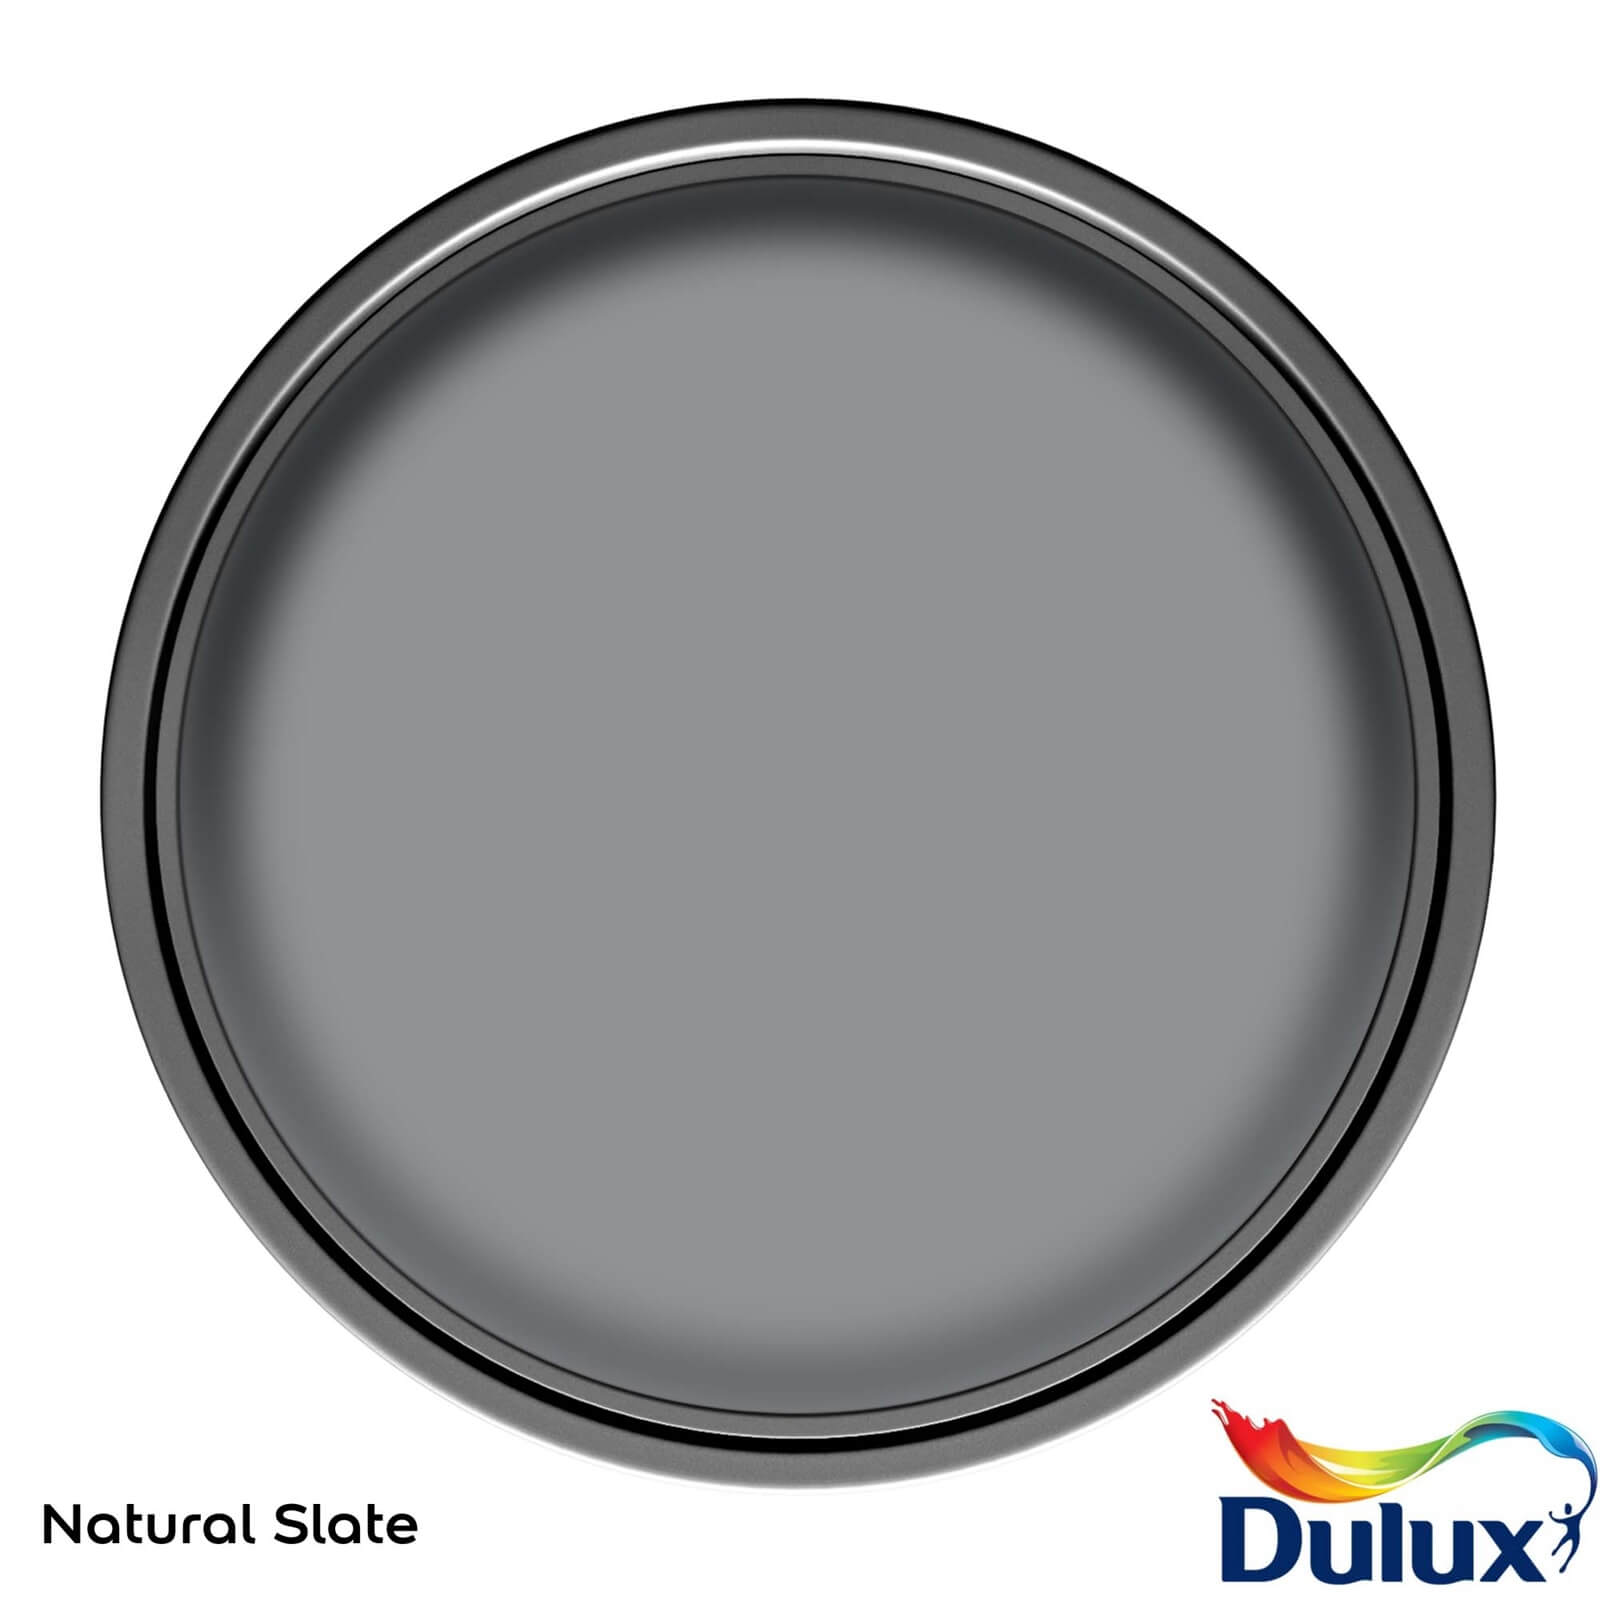 Dulux Easycare Washable & Tough Matt Paint Natural Slate - 2.5L